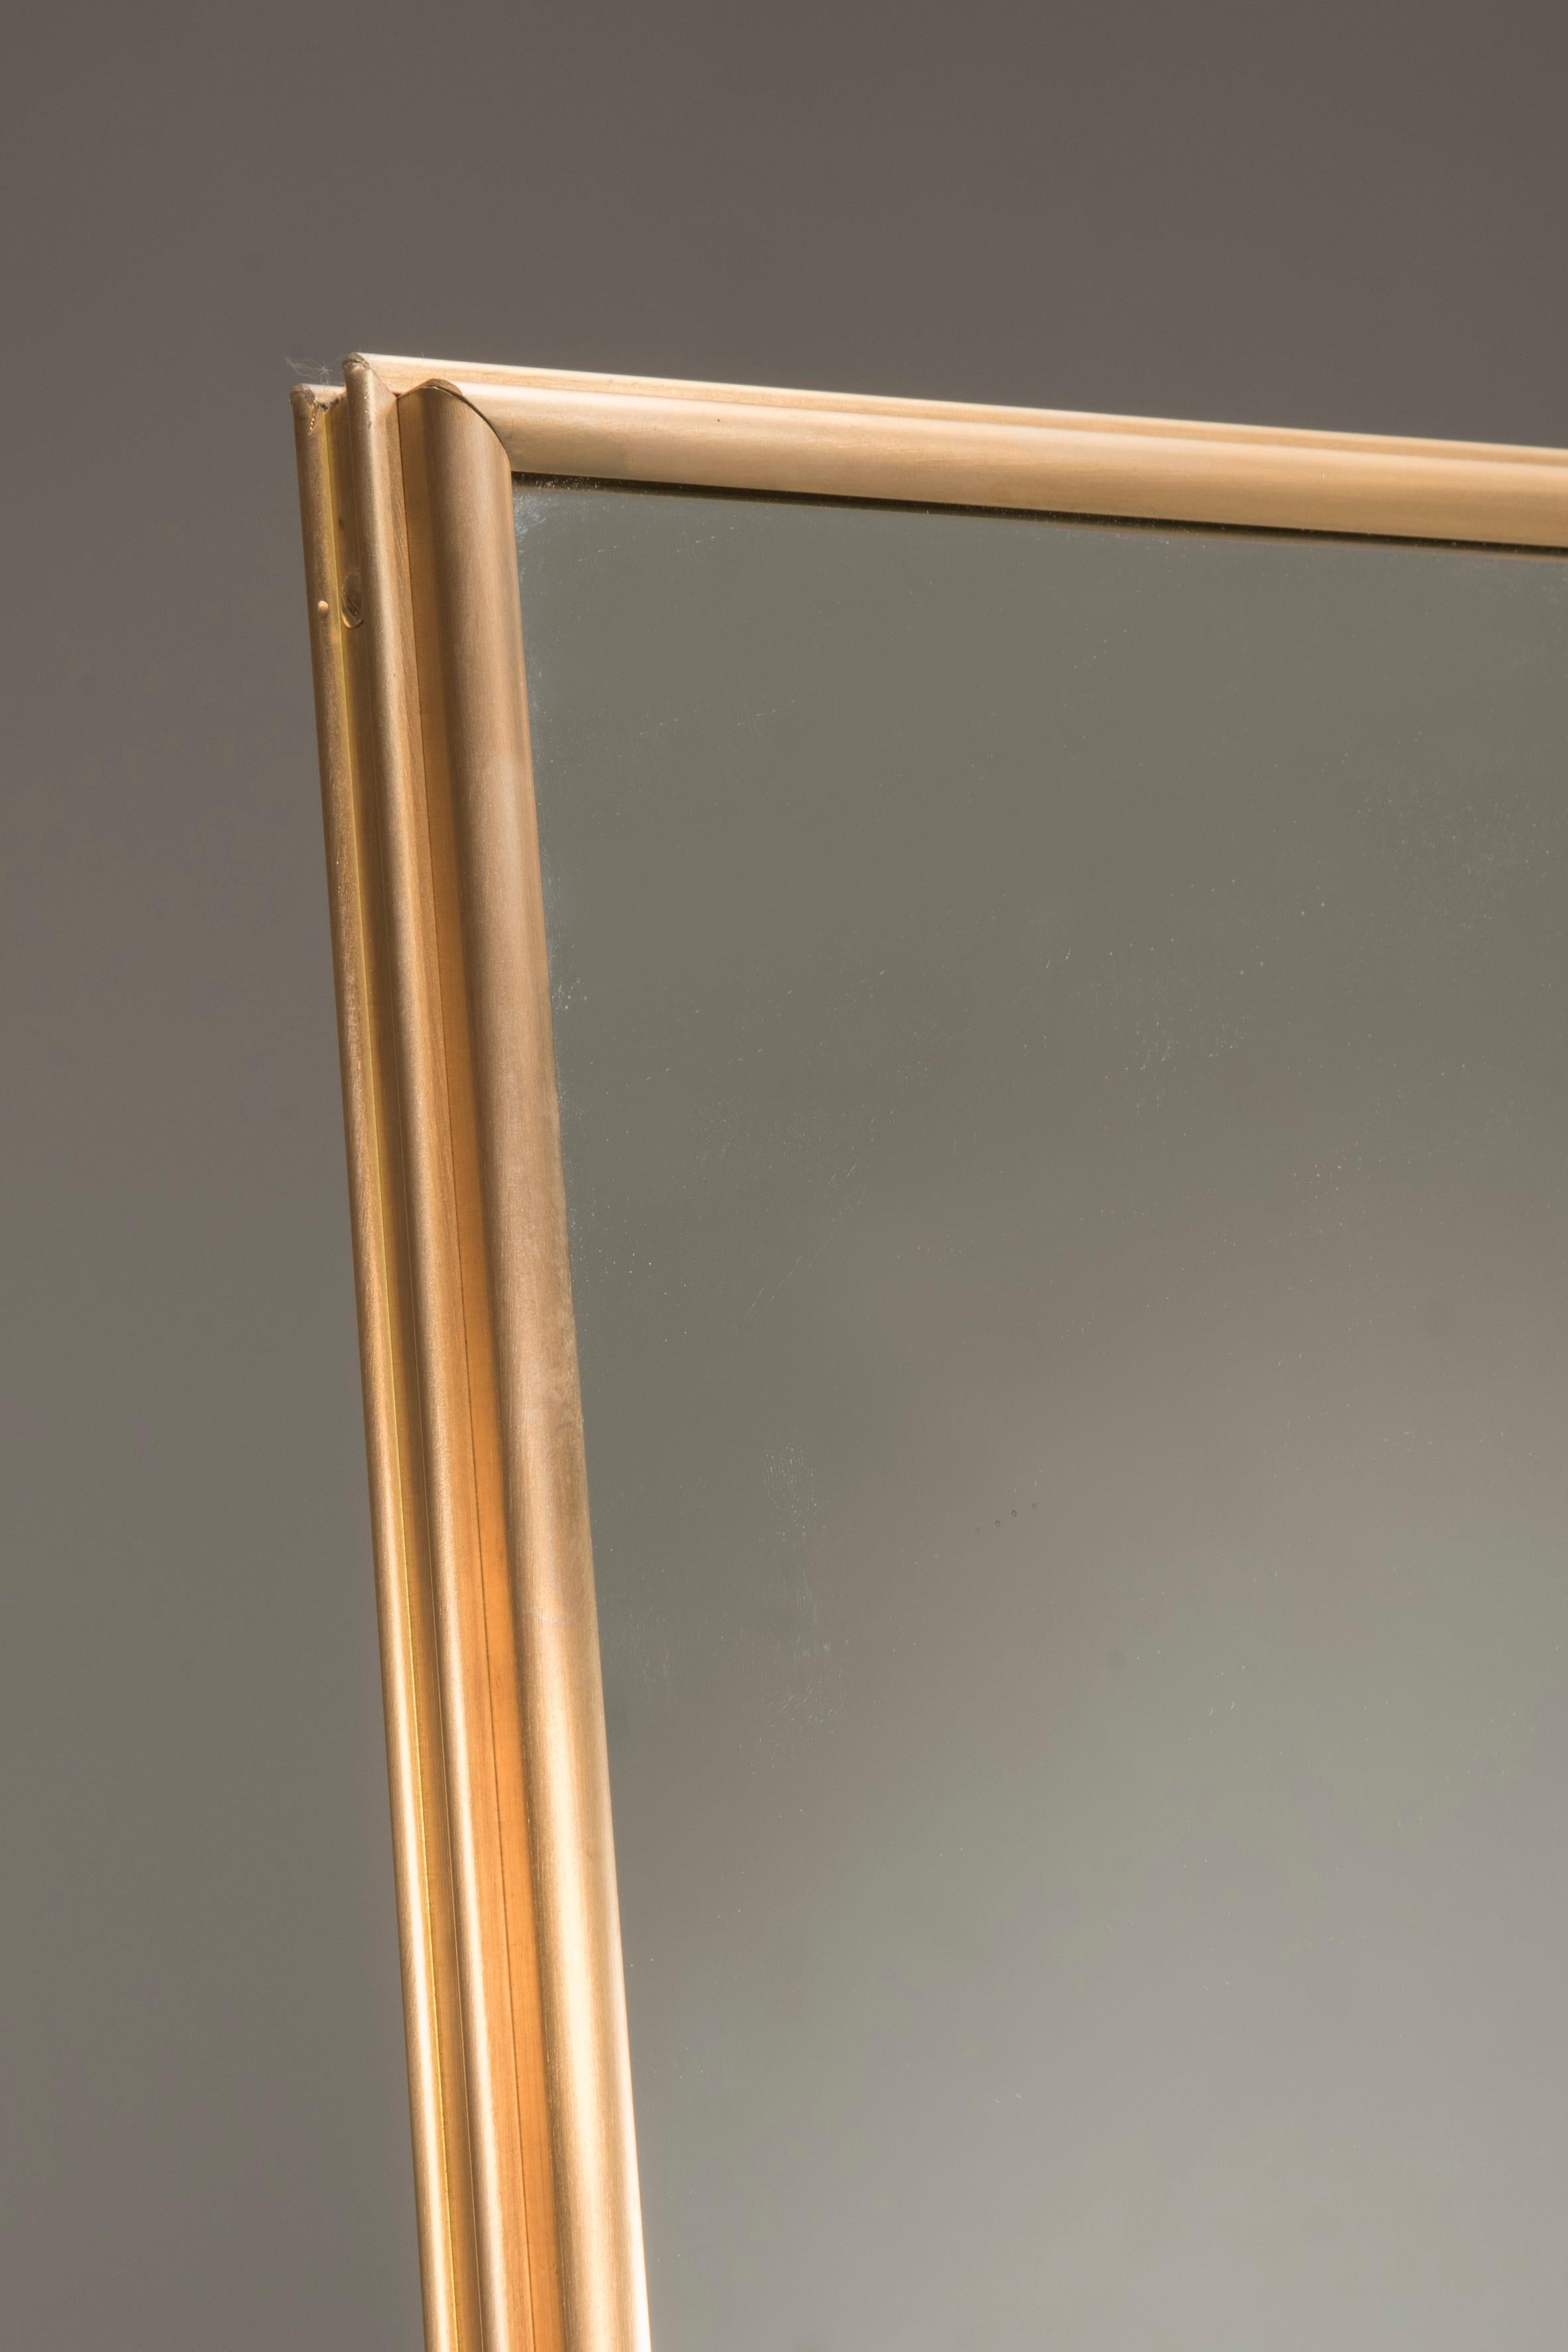 Pescetta präsentiert seine neue Kollektion von zeitgenössischen, individuell gestaltbaren Spiegeln mit Messingrahmen. Mit ihrem Messingrahmen und der mehrteiligen Fensteroptik sind diese Spiegel dem Art-déco-Stil des frühen 20. Jahrhunderts